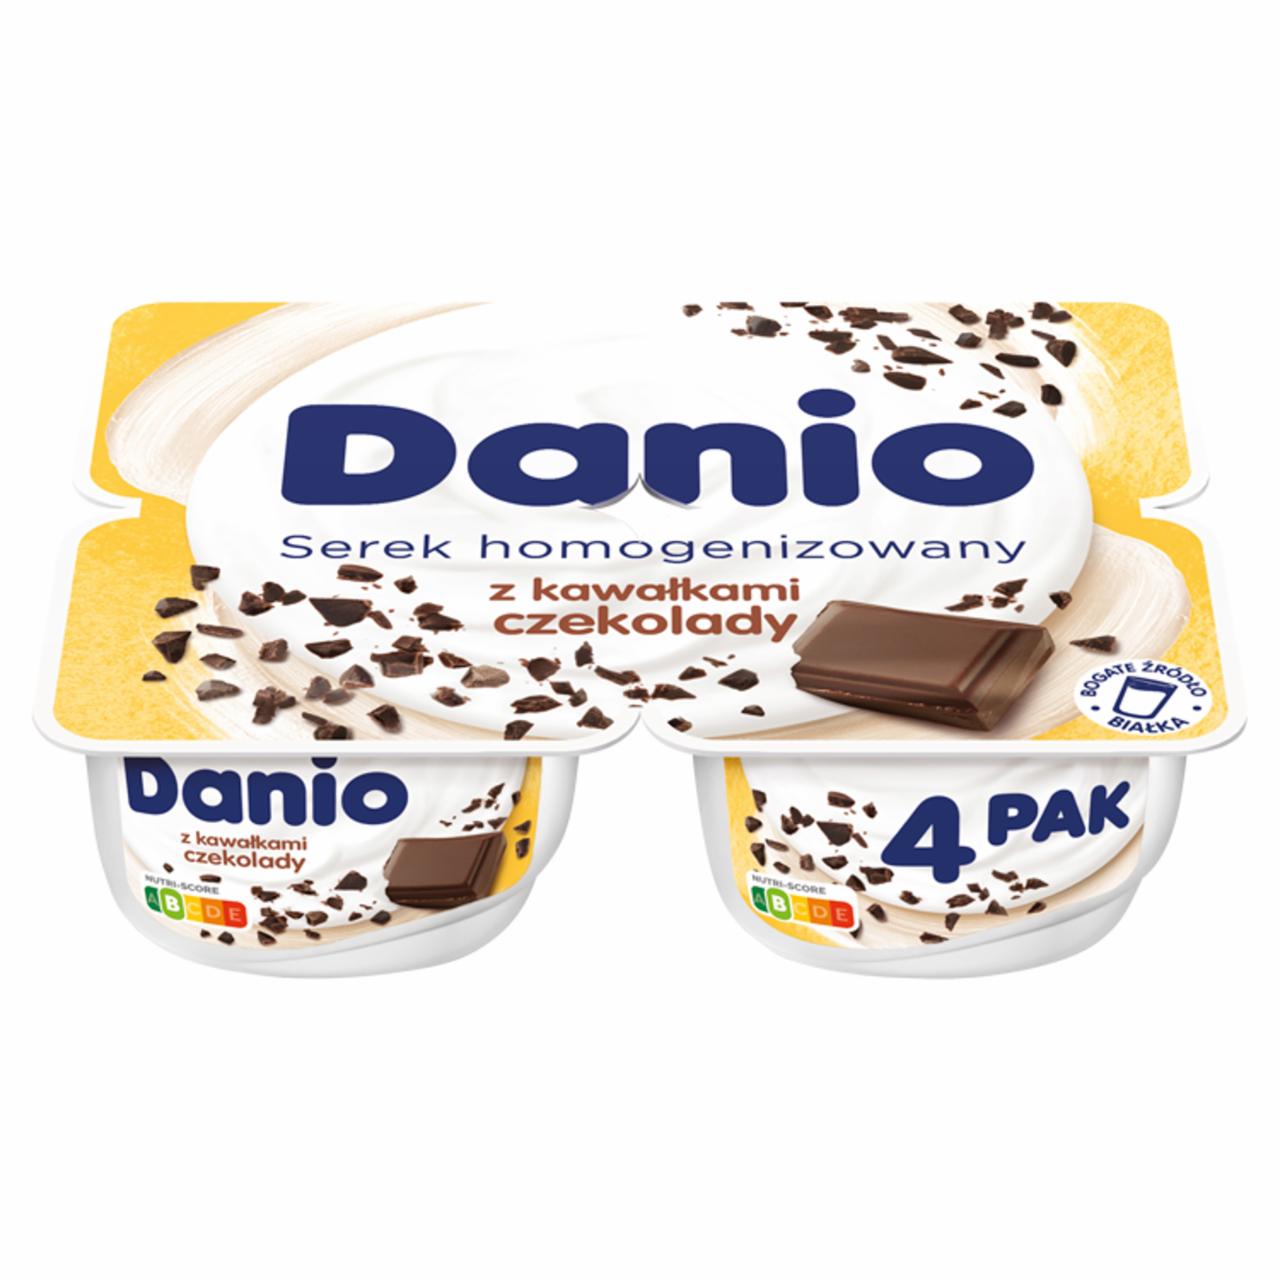 Zdjęcia - Danio Serek homogenizowany z kawałkami czekolady 520 g (4 x 130 g)